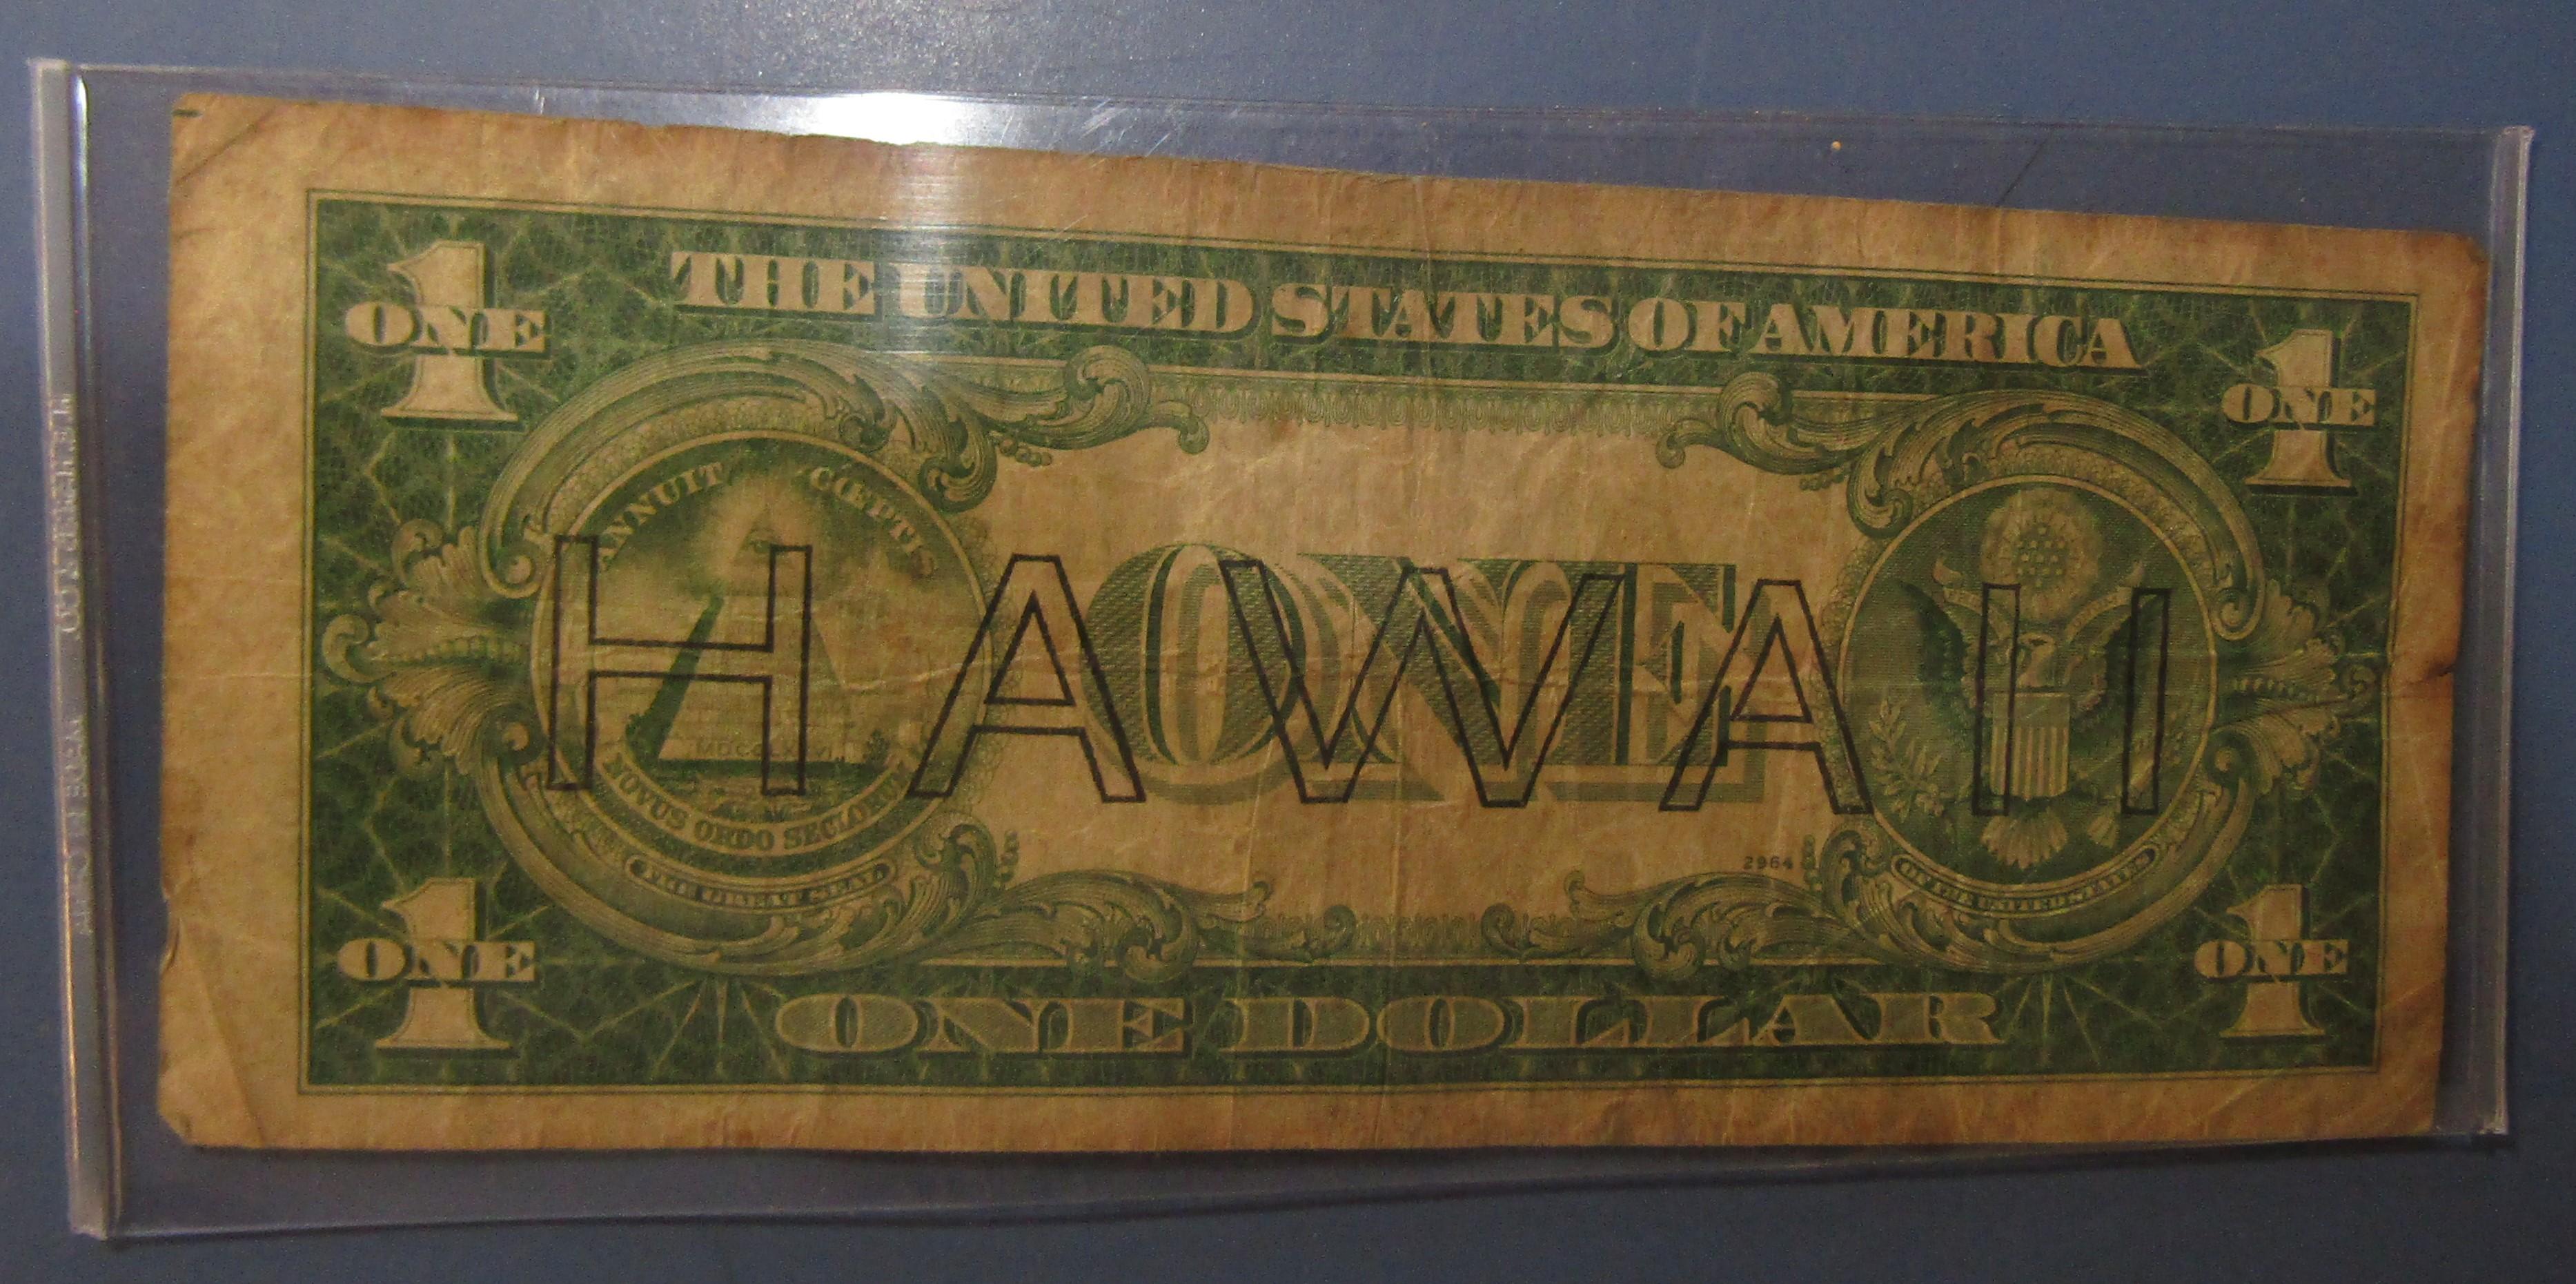 1935-A $1.00 HAWAII SILVER CERTIFICATE NOTE FINE